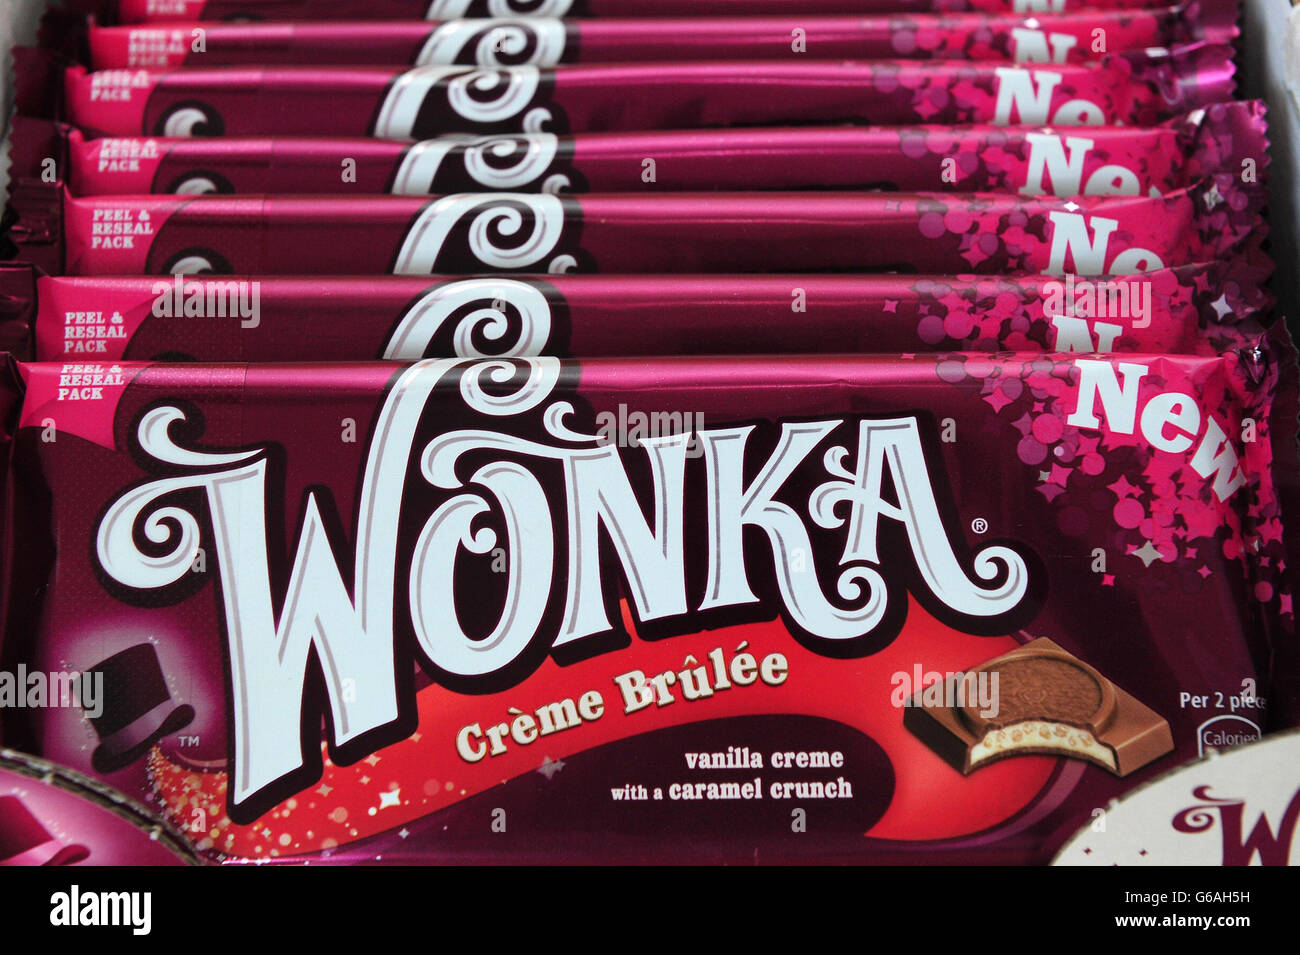 Cioccolato wonka immagini e fotografie stock ad alta risoluzione - Alamy